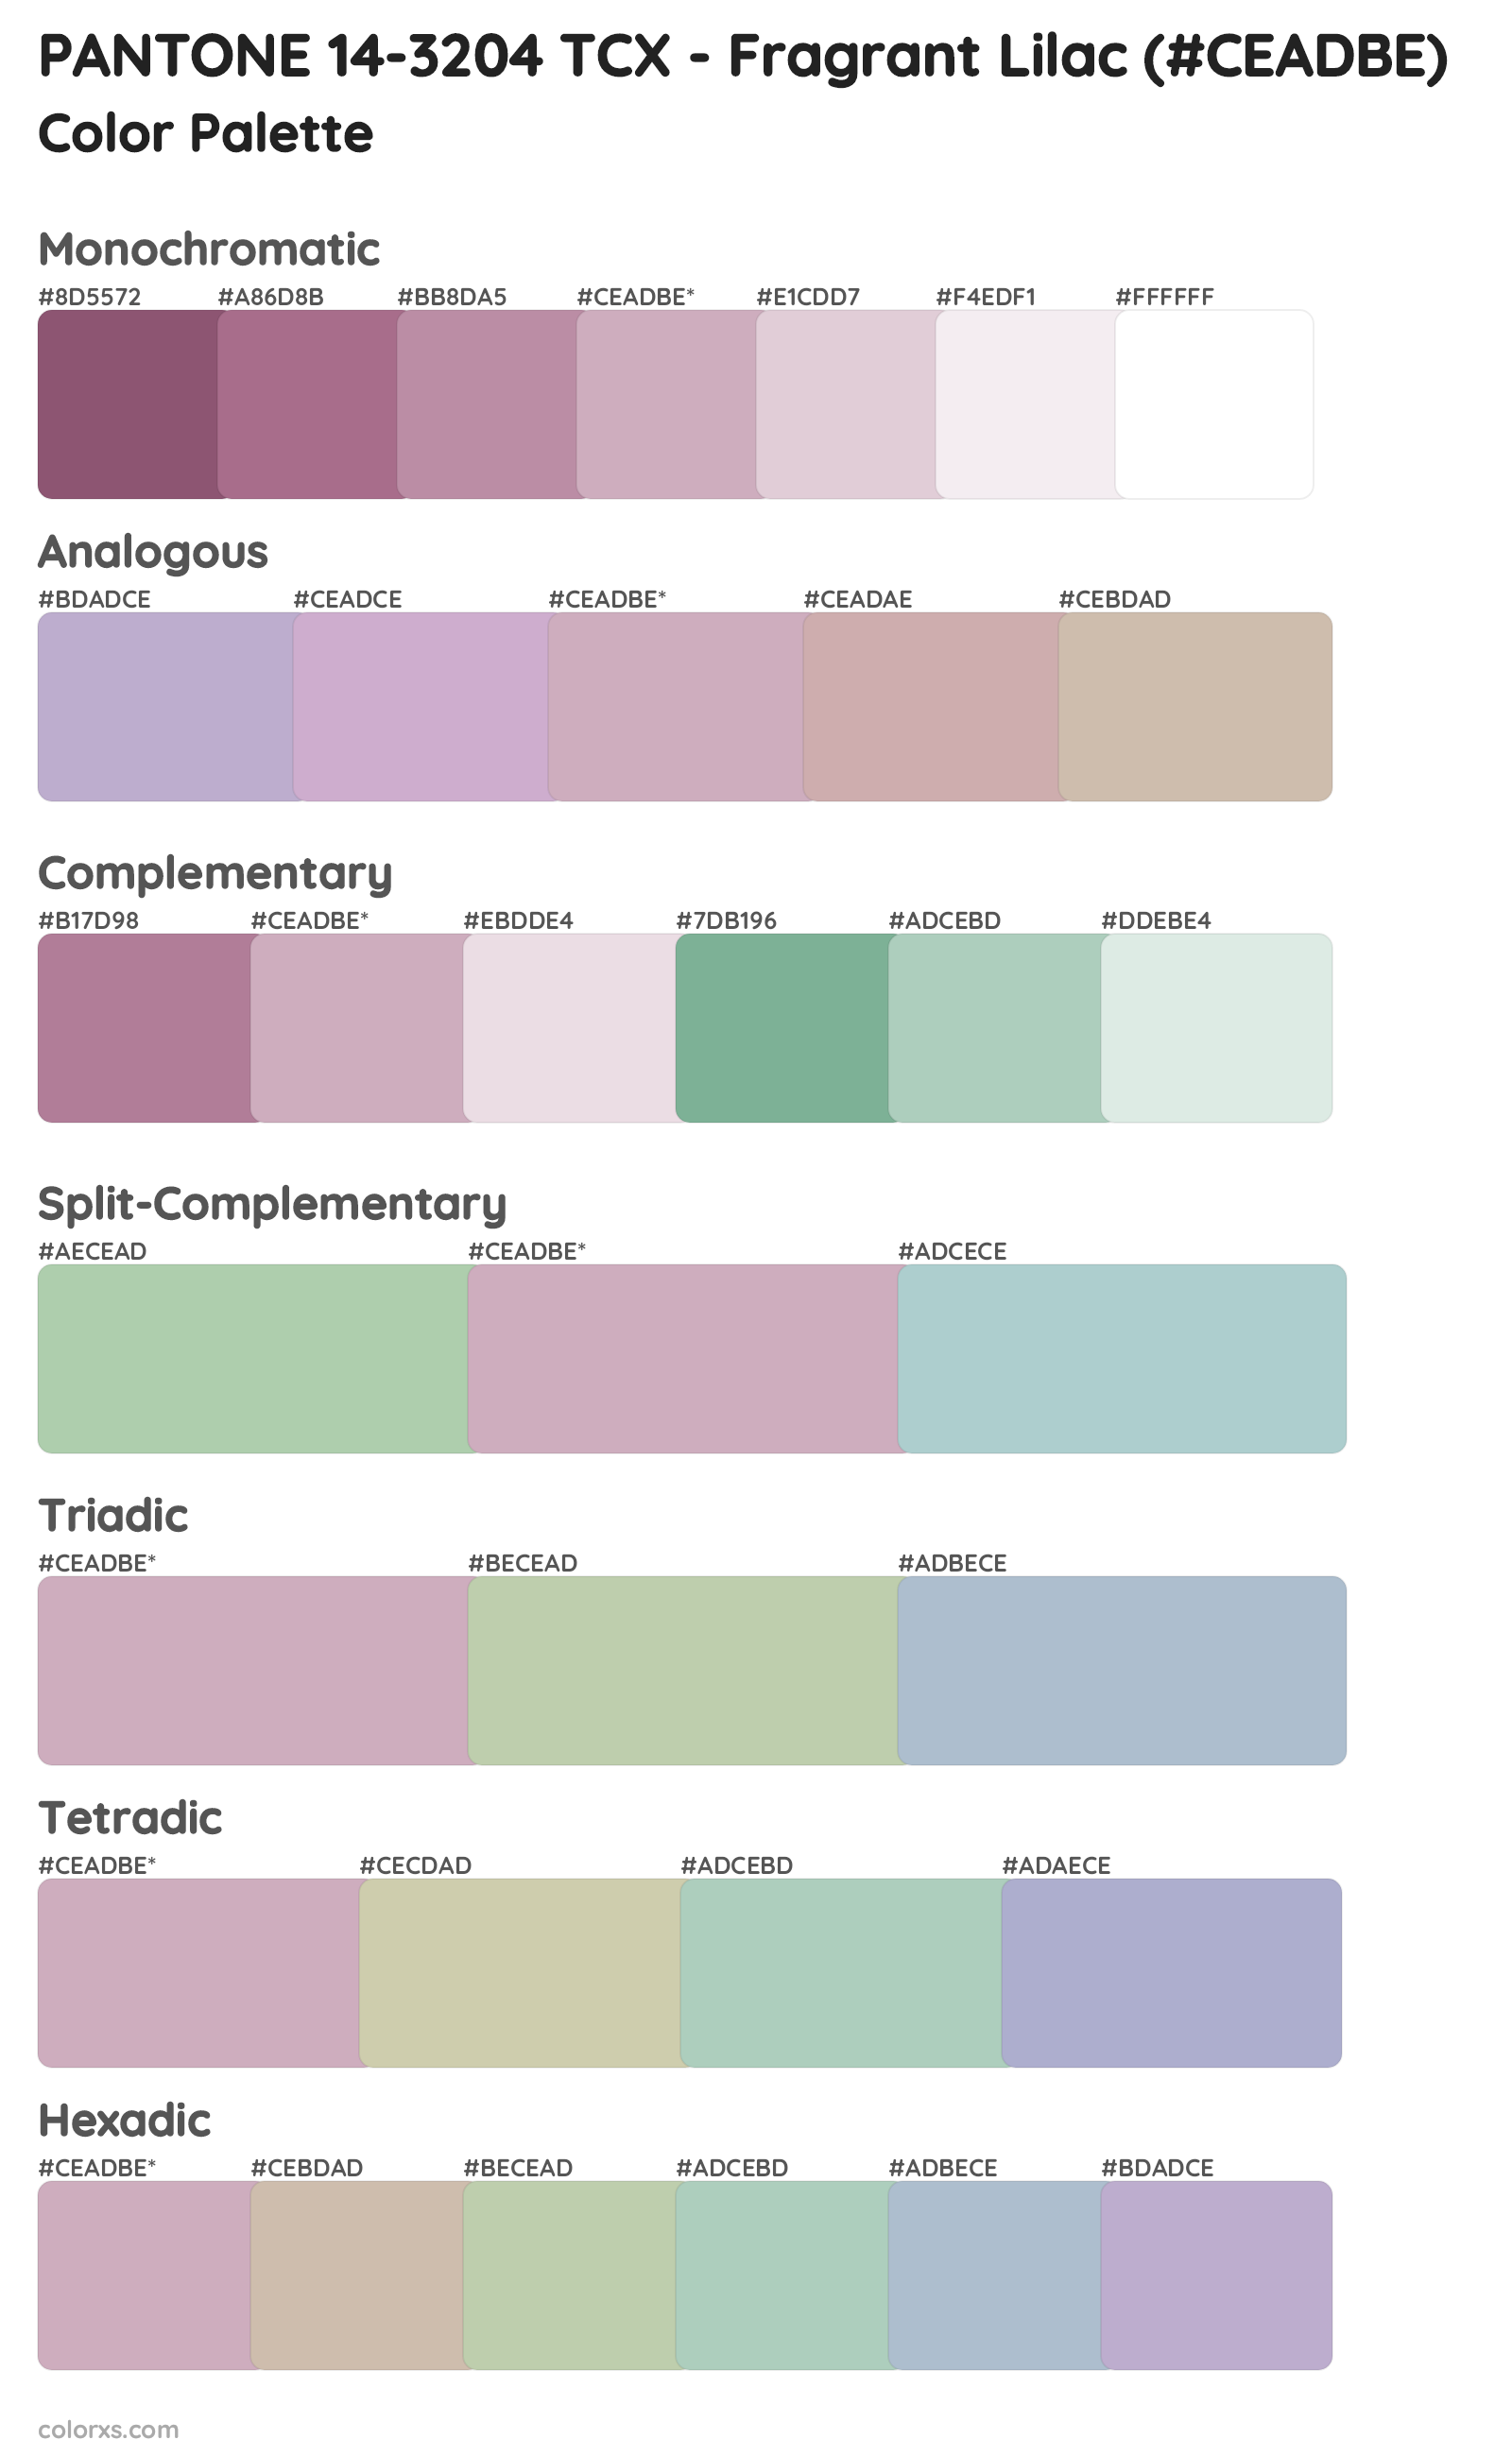 PANTONE 14-3204 TCX - Fragrant Lilac Color Scheme Palettes